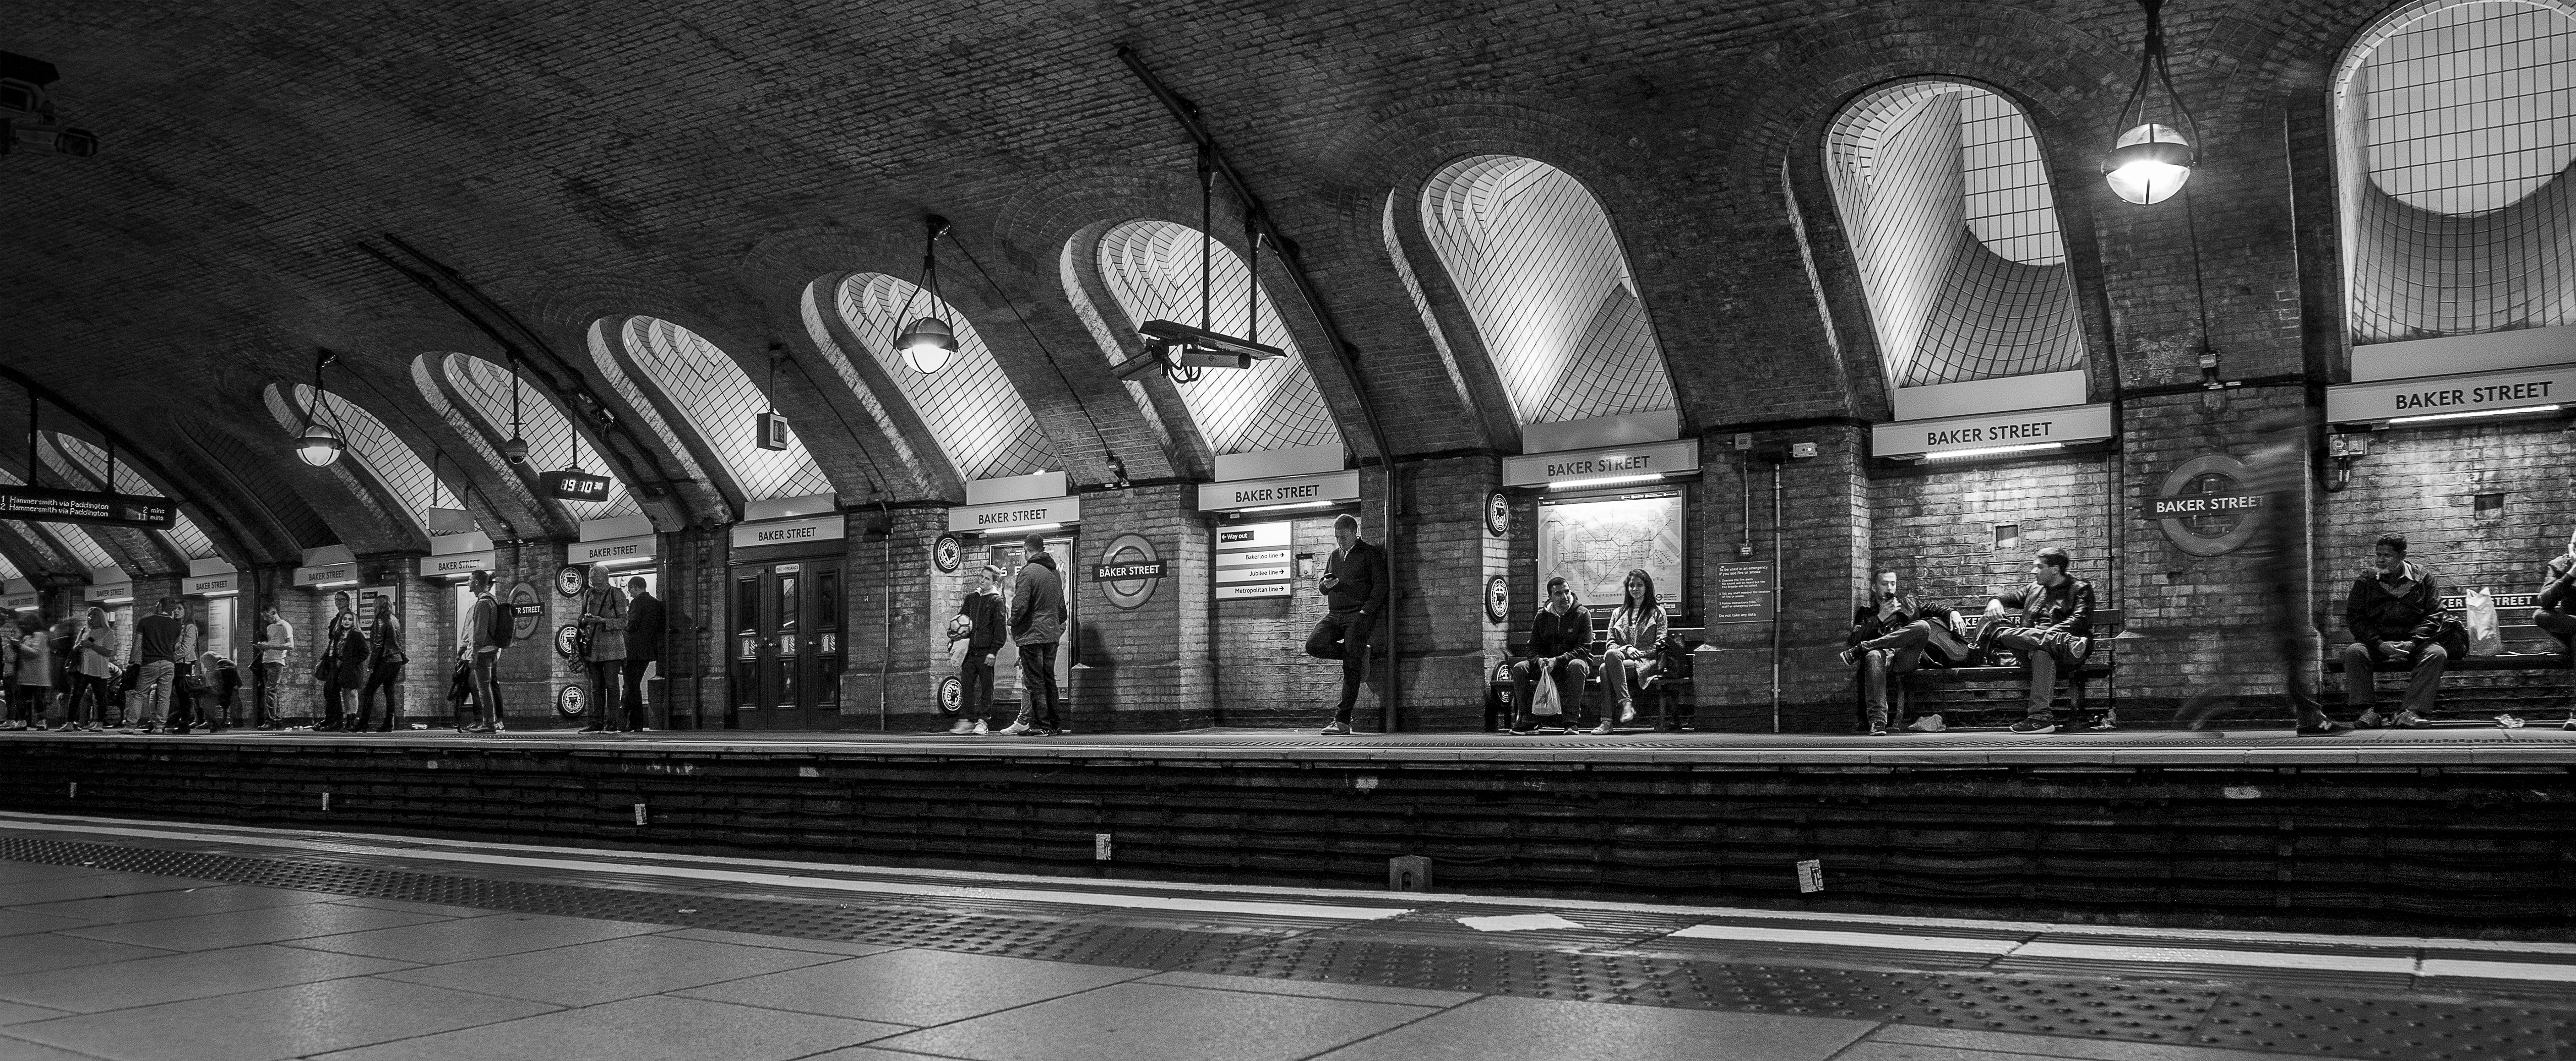 Baker Street-Tube Station